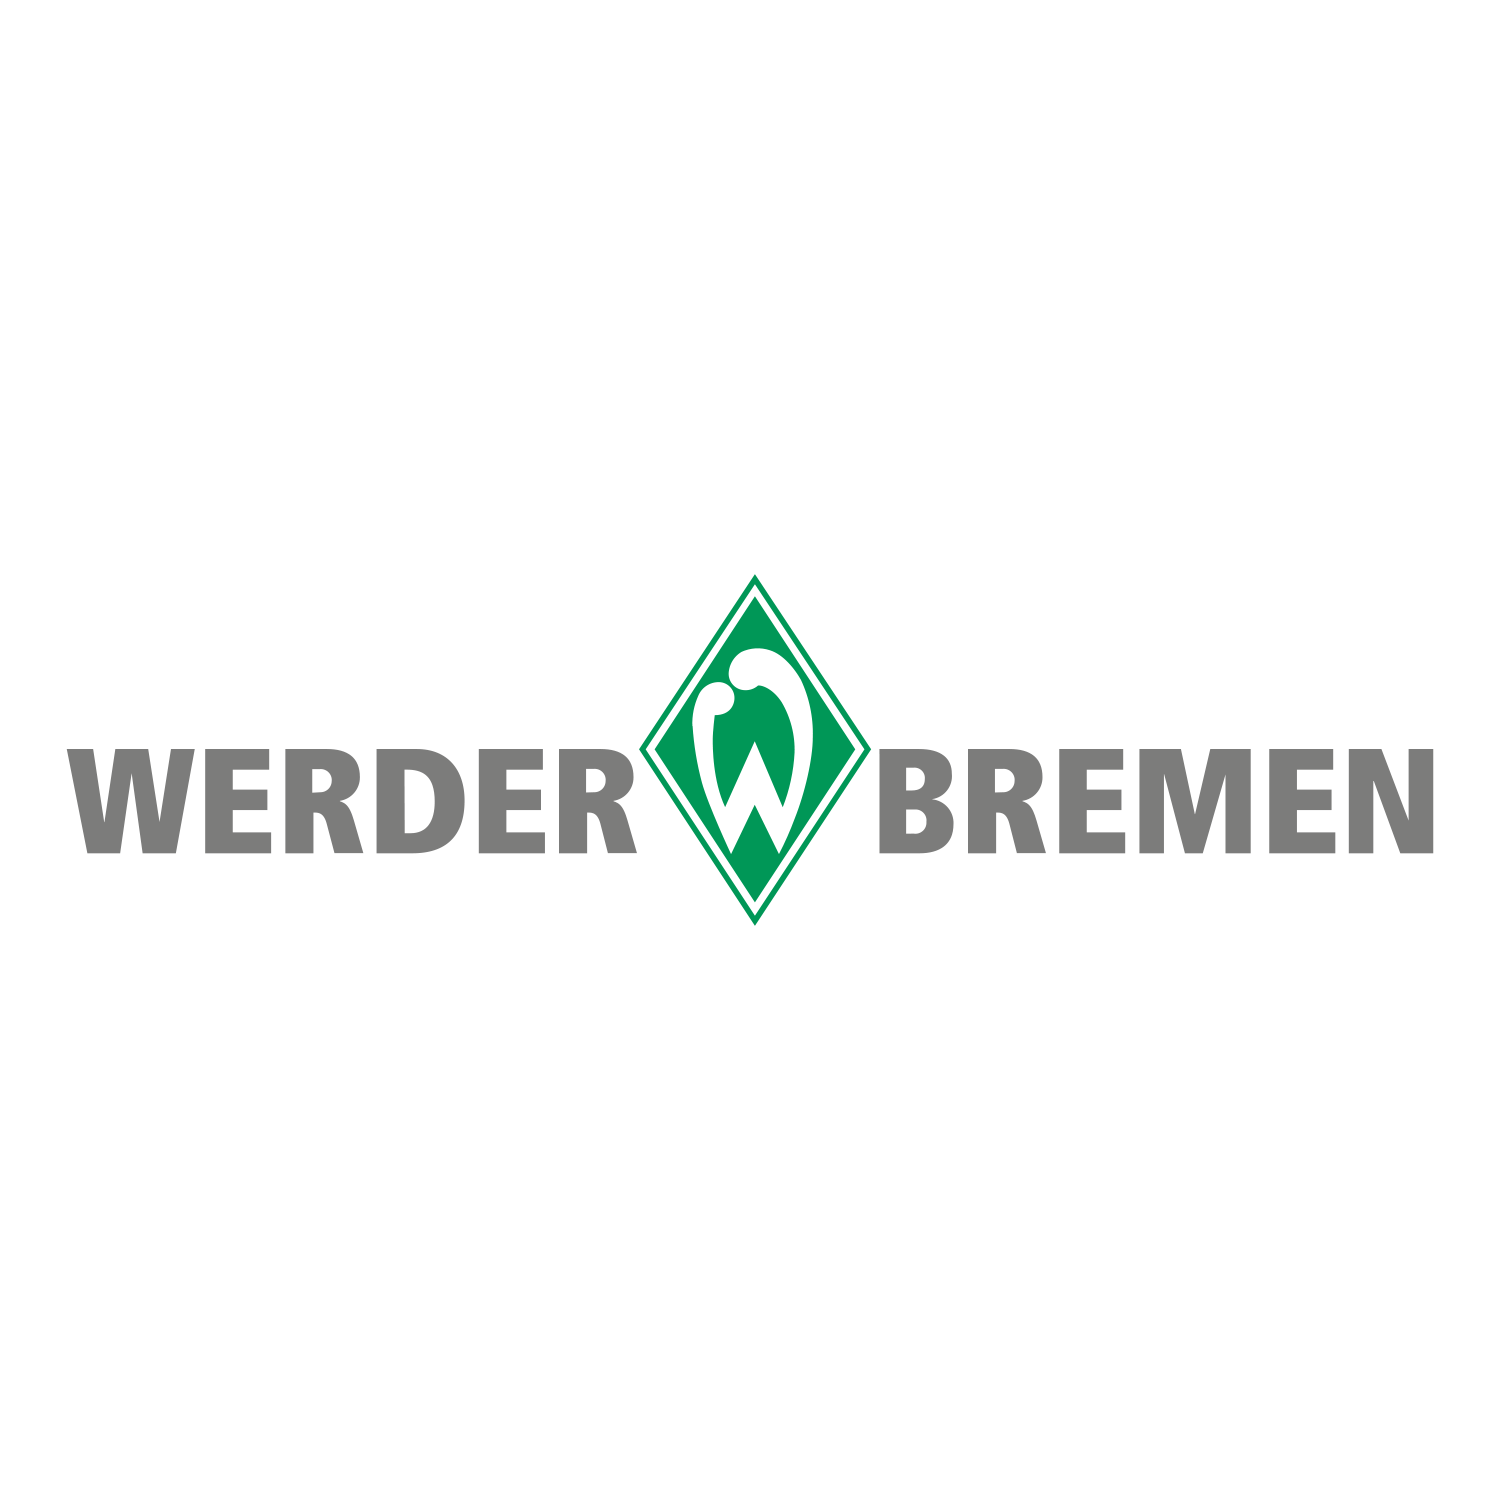 werder bremen logo clipart 10 free Cliparts | Download ...